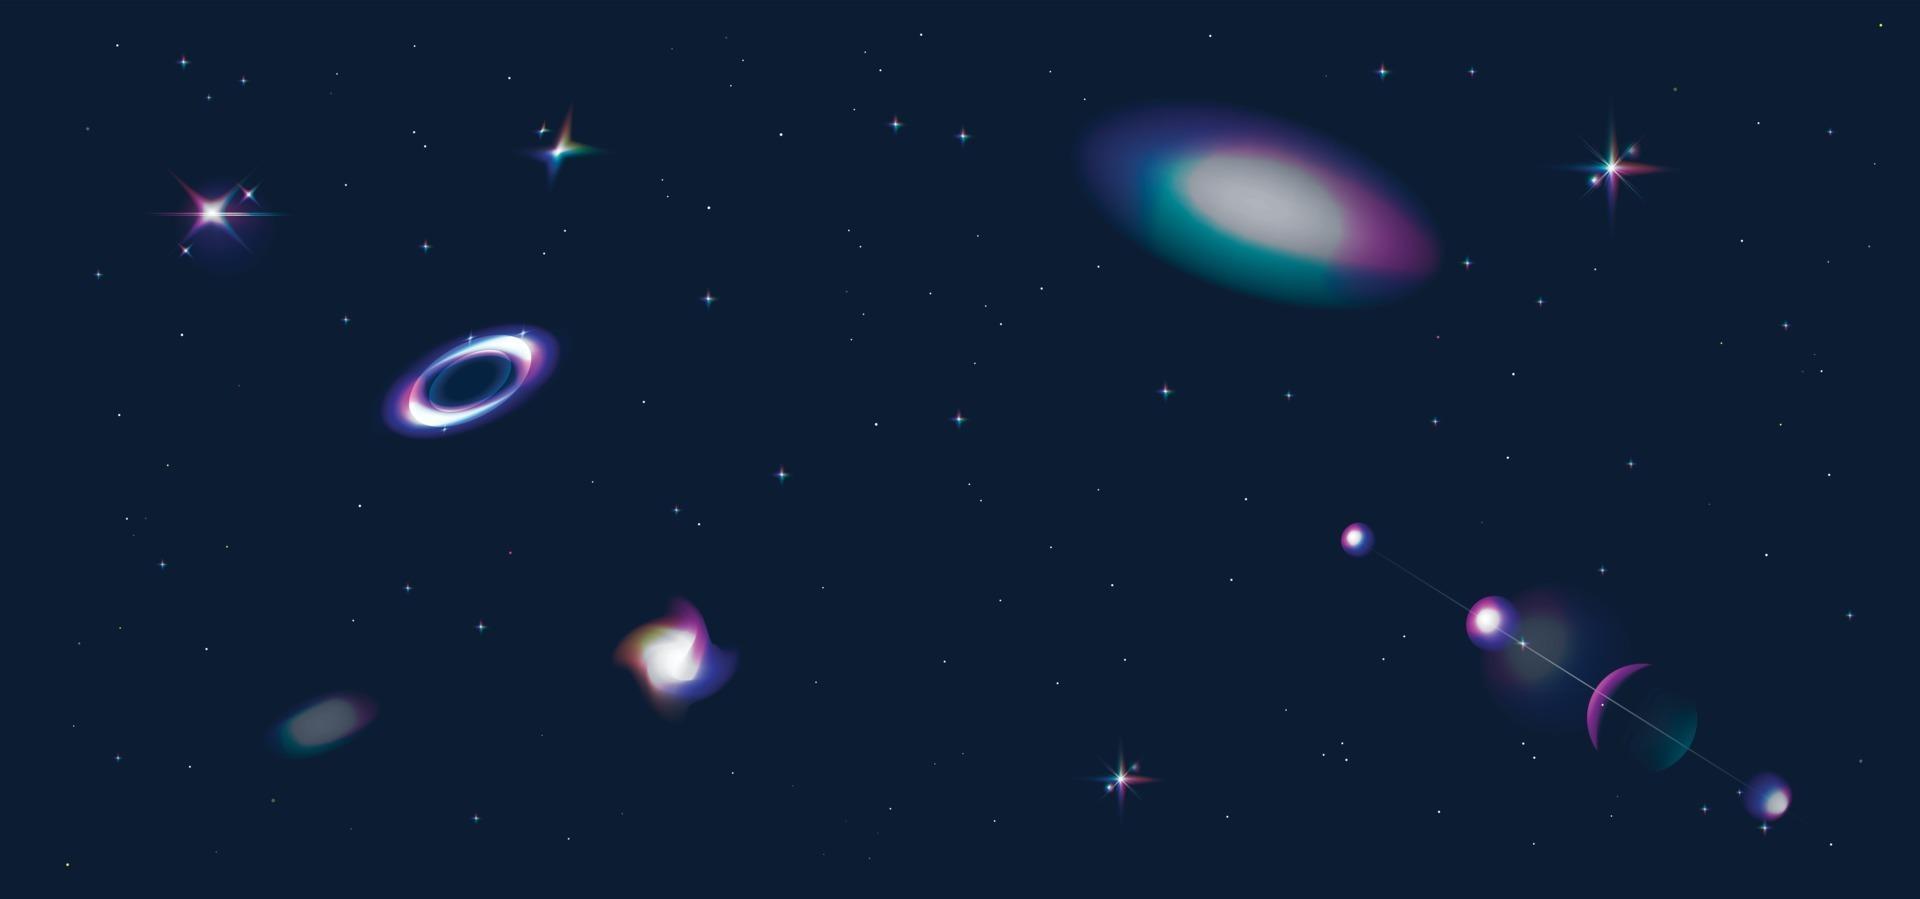 espacio exterior con estrellas brillantes brillantes, fondo azul y púrpura resplandor. vector